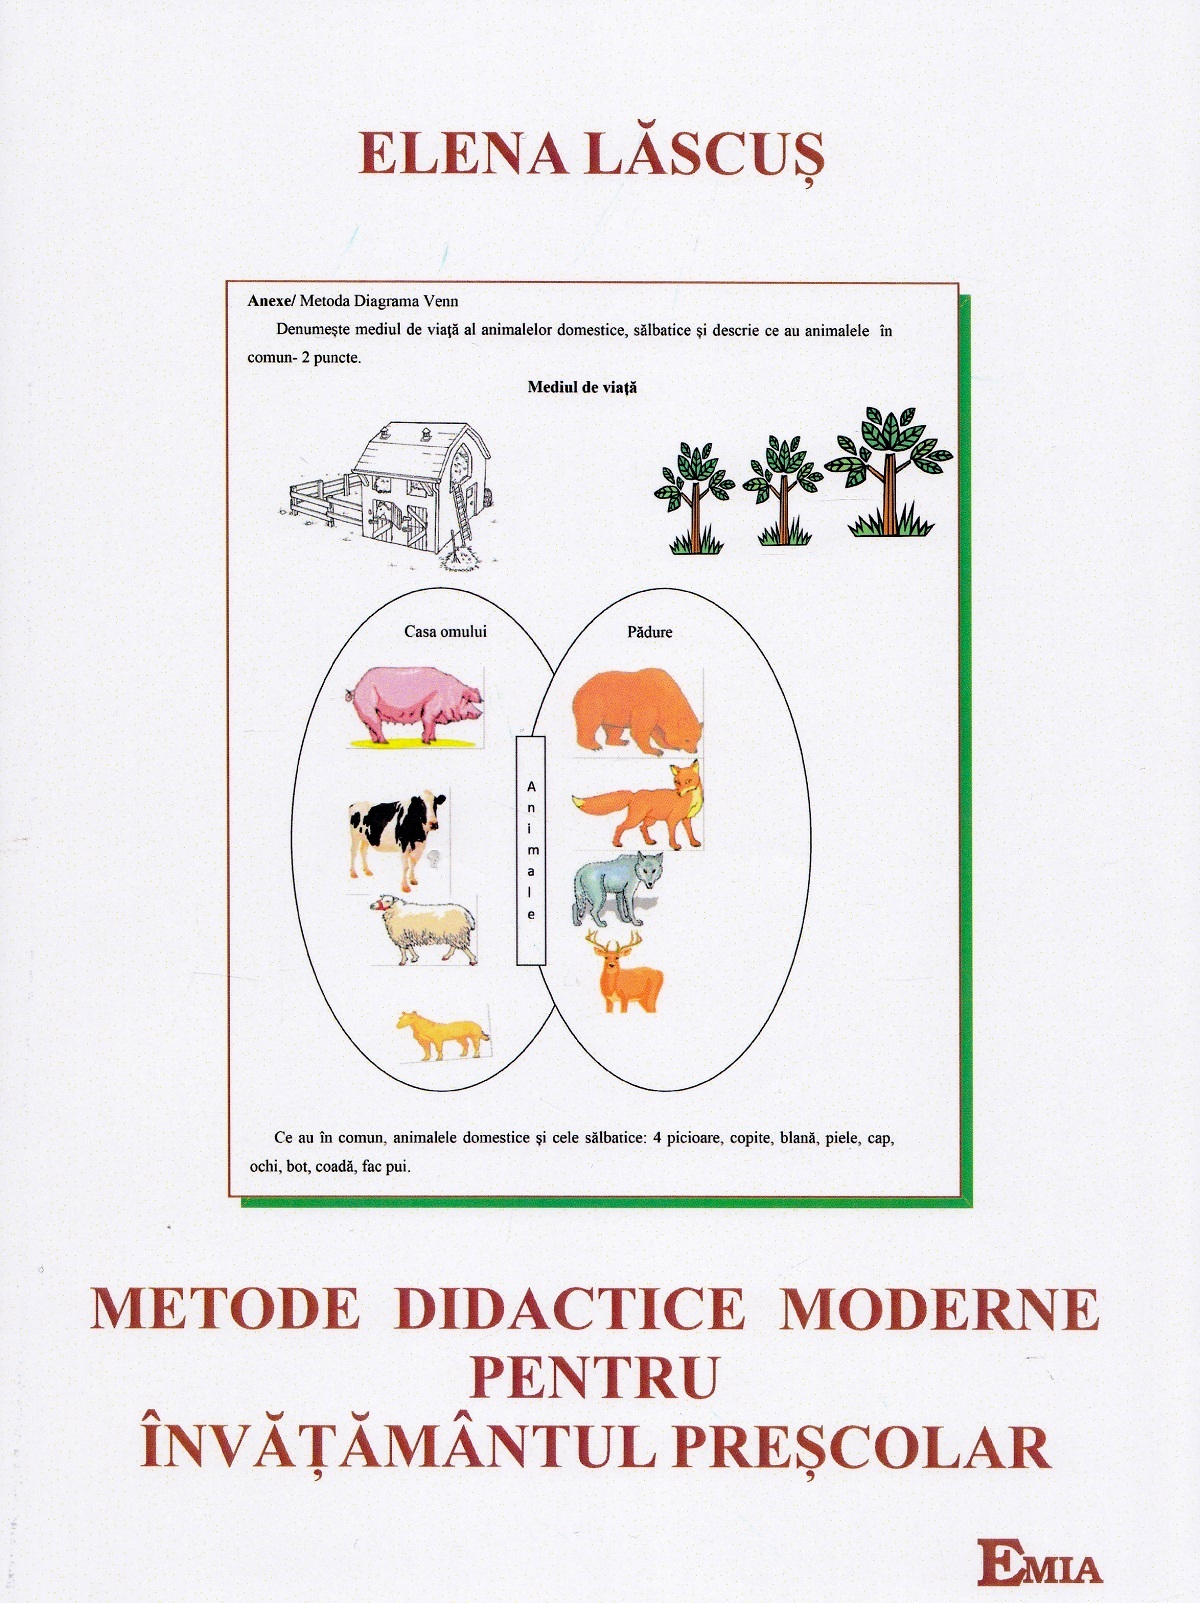 Metode didactice moderne pentru invatamantul prescolar - Elena Lascus